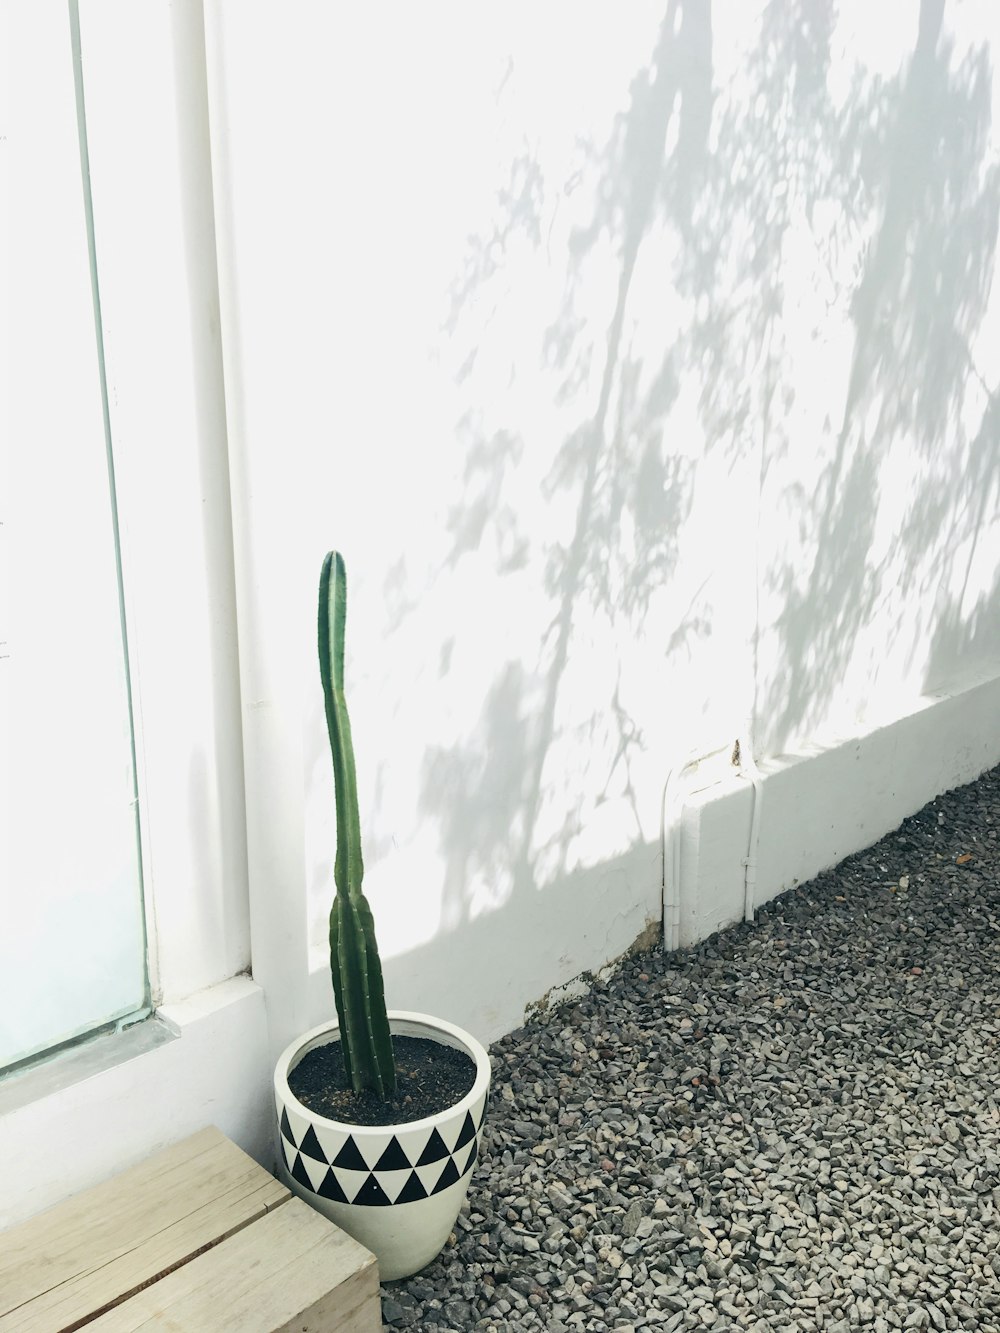 plante de cactus dans un vase